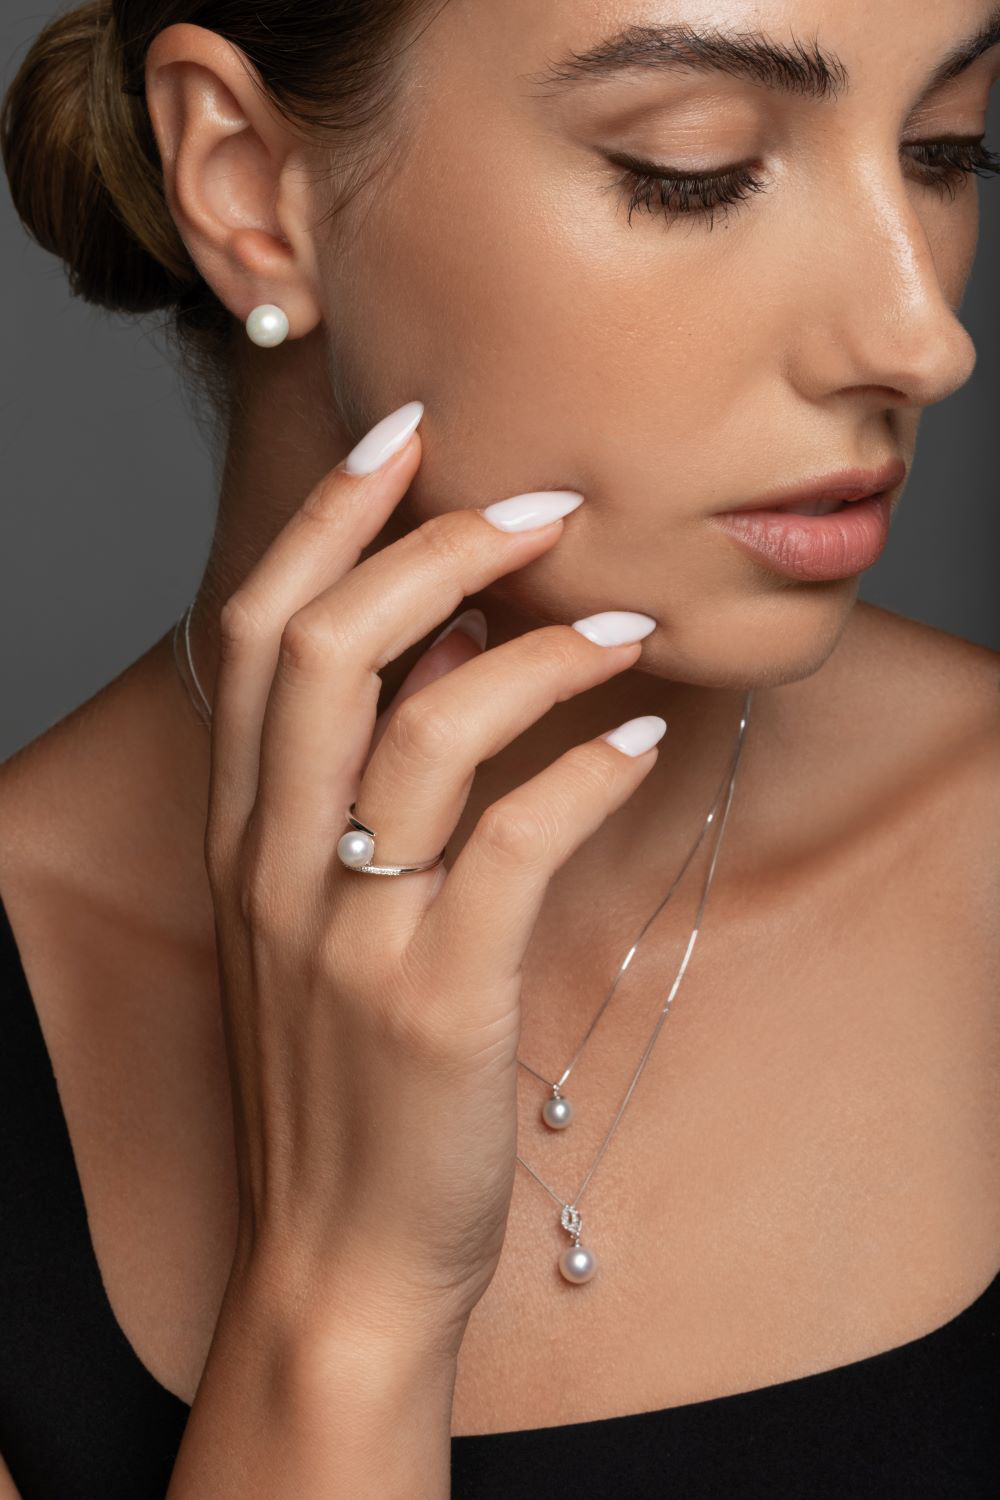 Δαχτυλίδι Pearls από λευκό χρυσό 18K με freshwater pearl και διαμάντια μπριγιάν